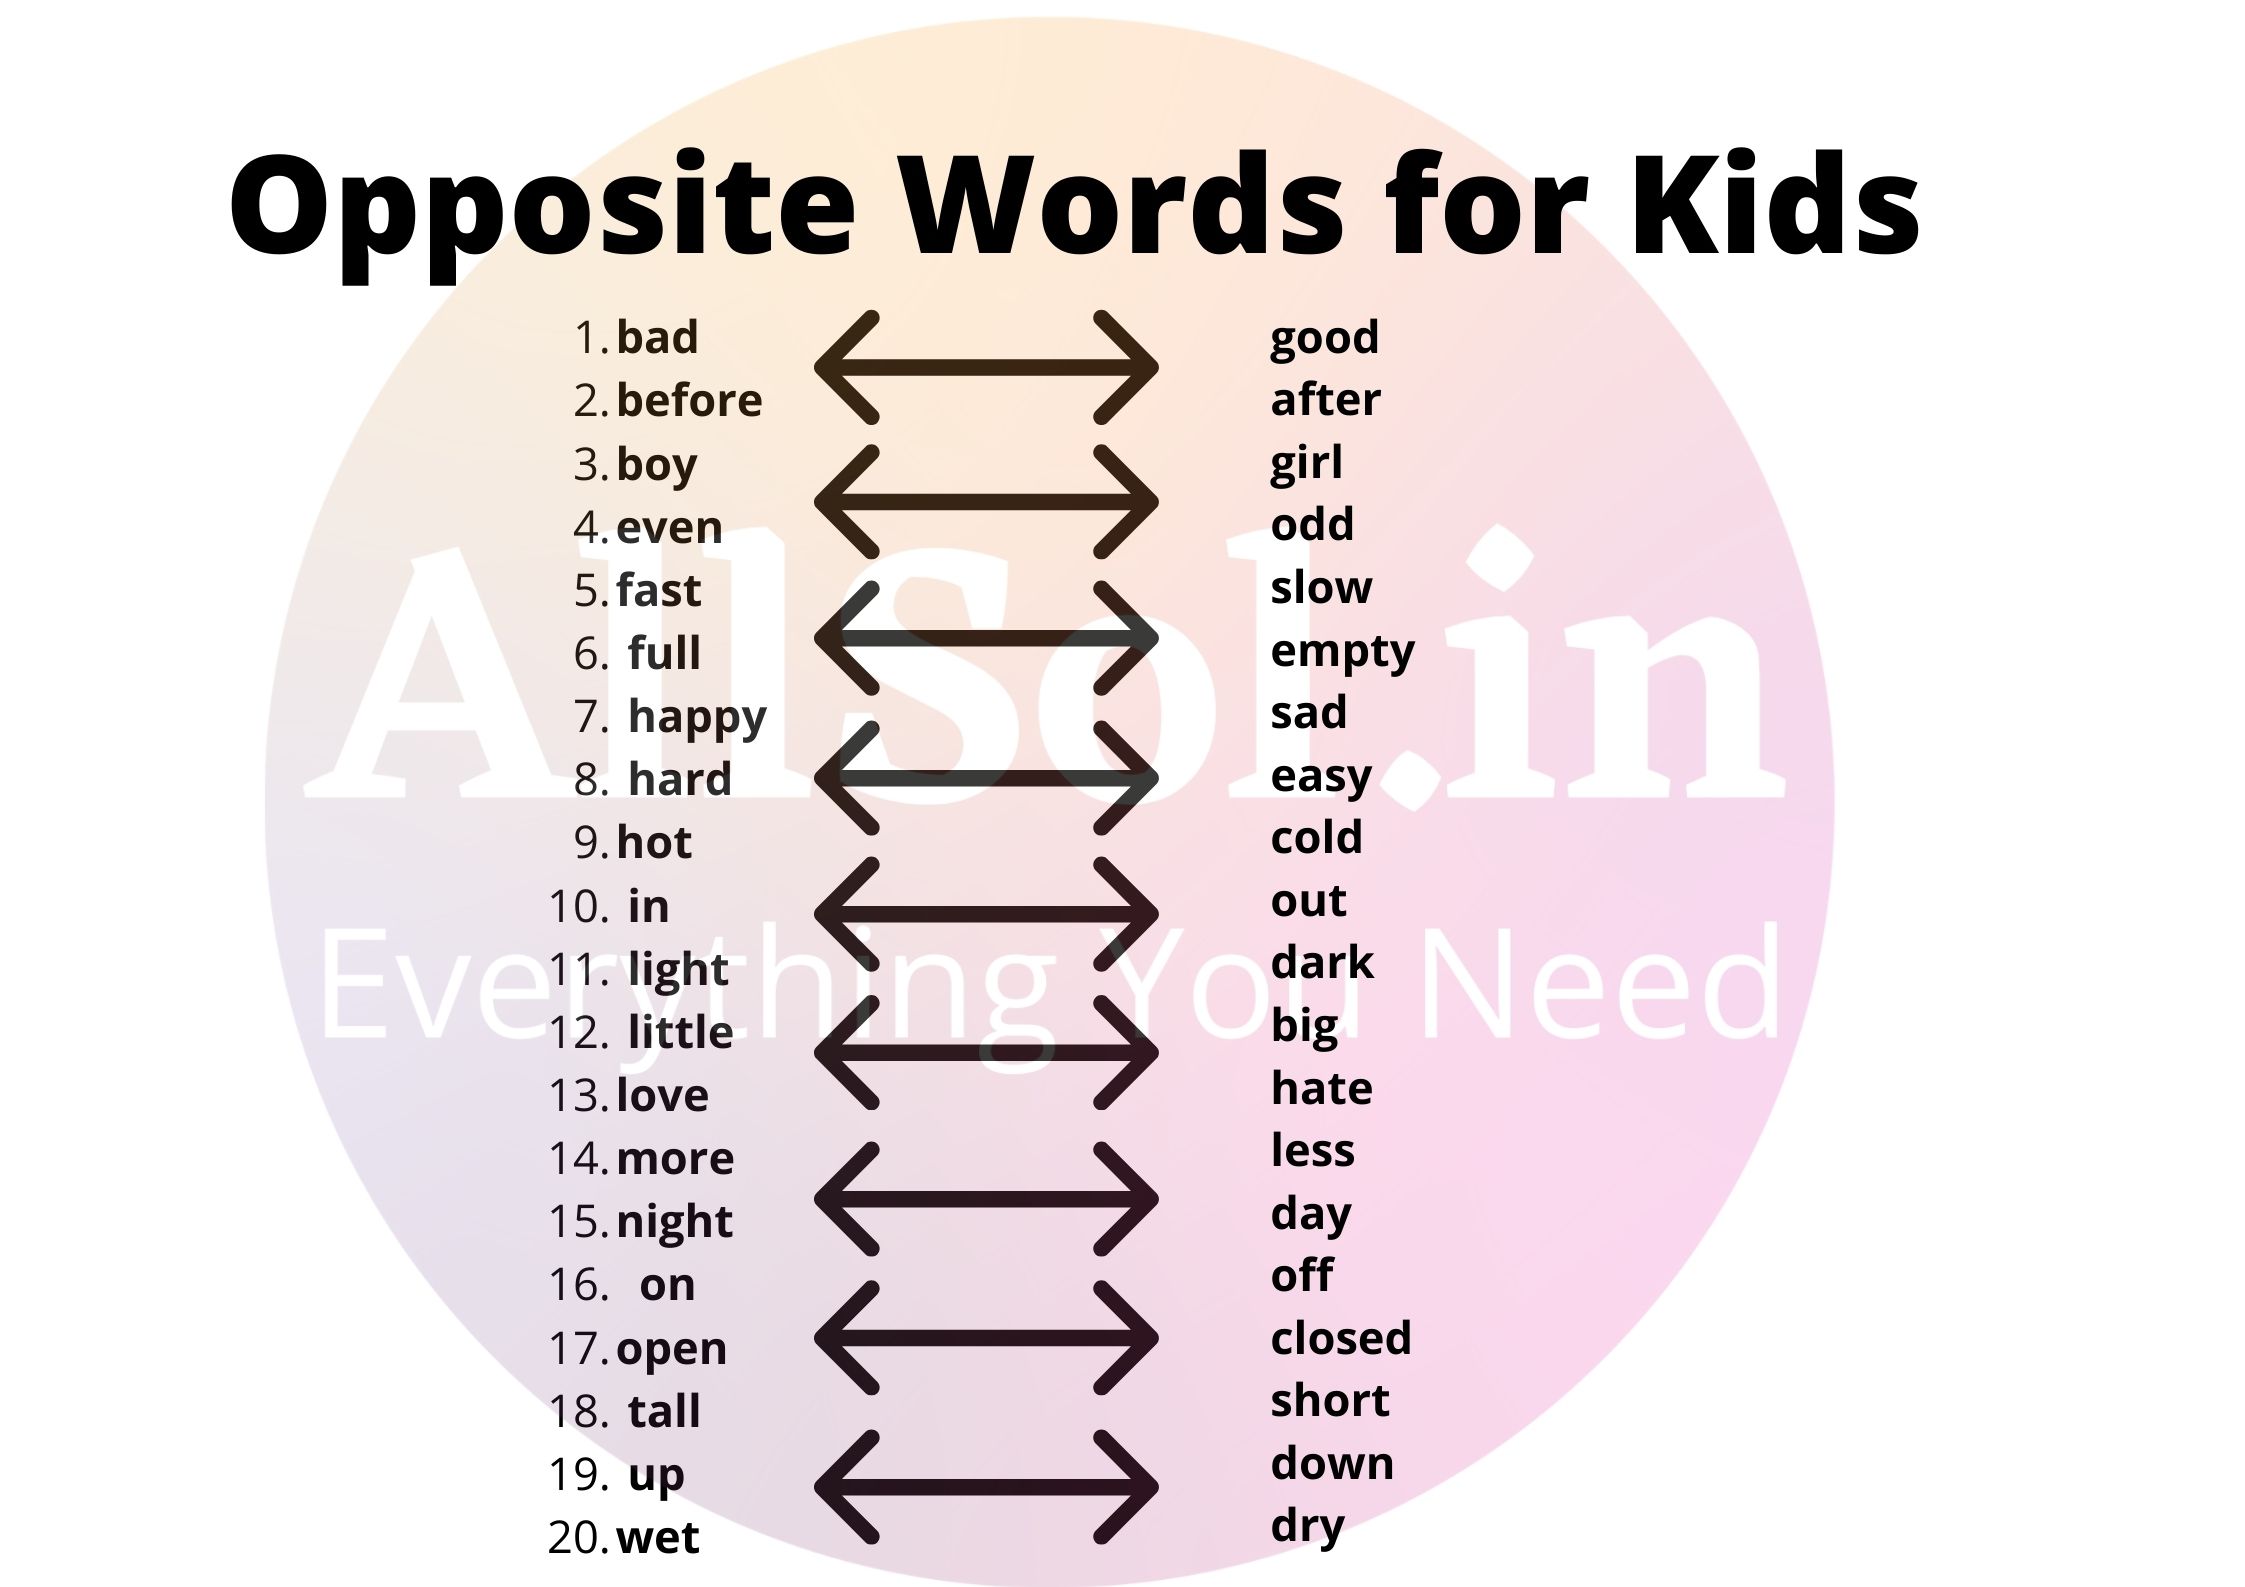 Opposite words for kids